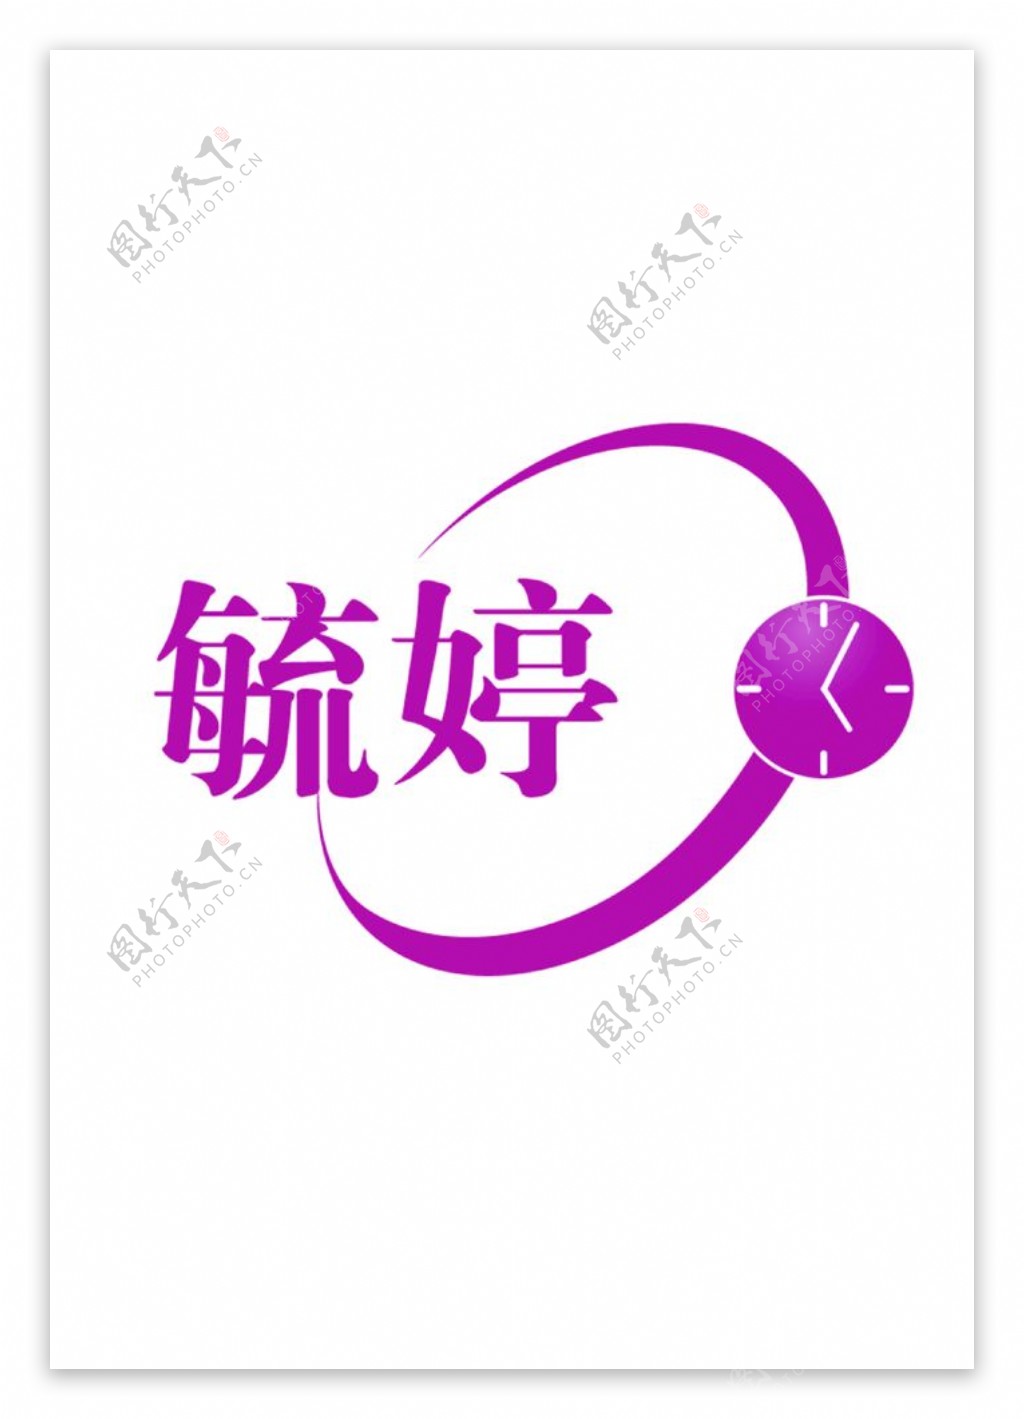 毓婷logo